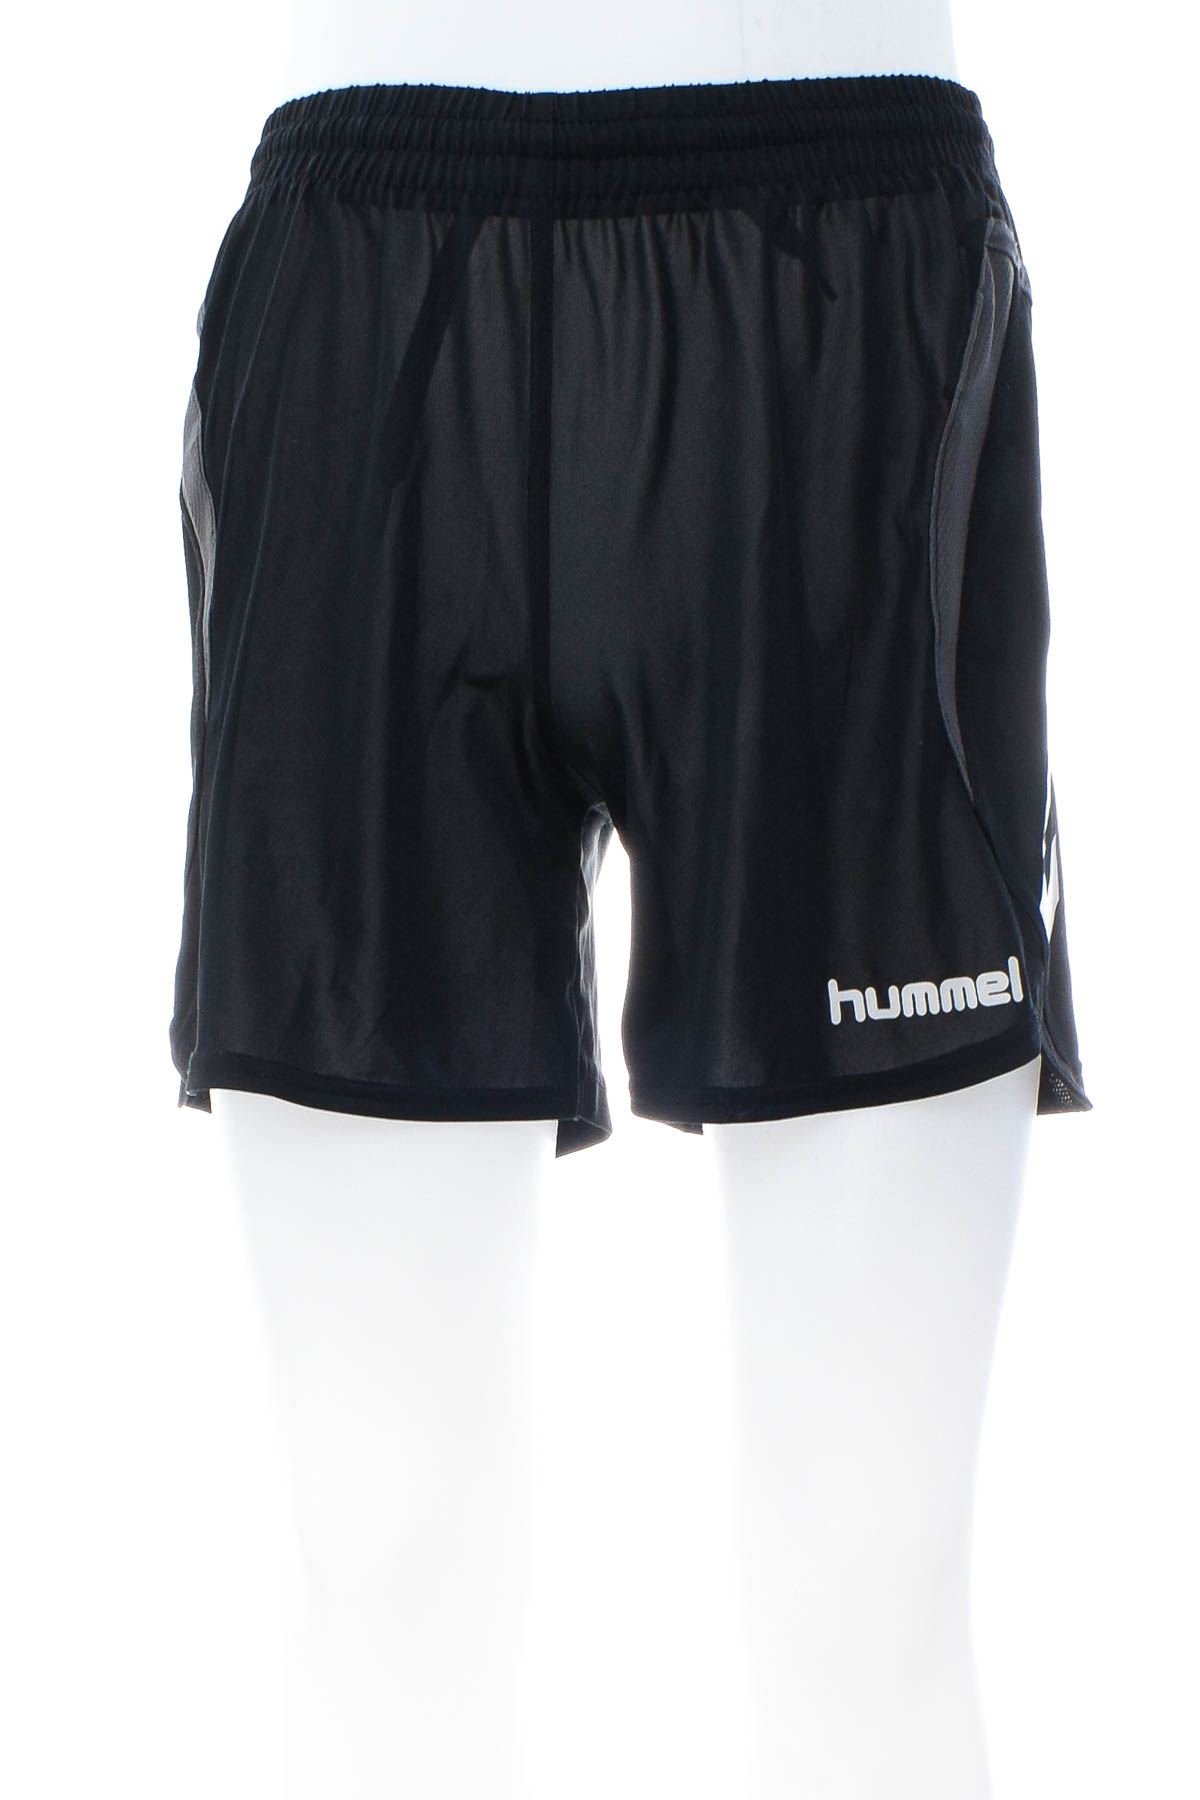 Men's shorts - Hummel - 0